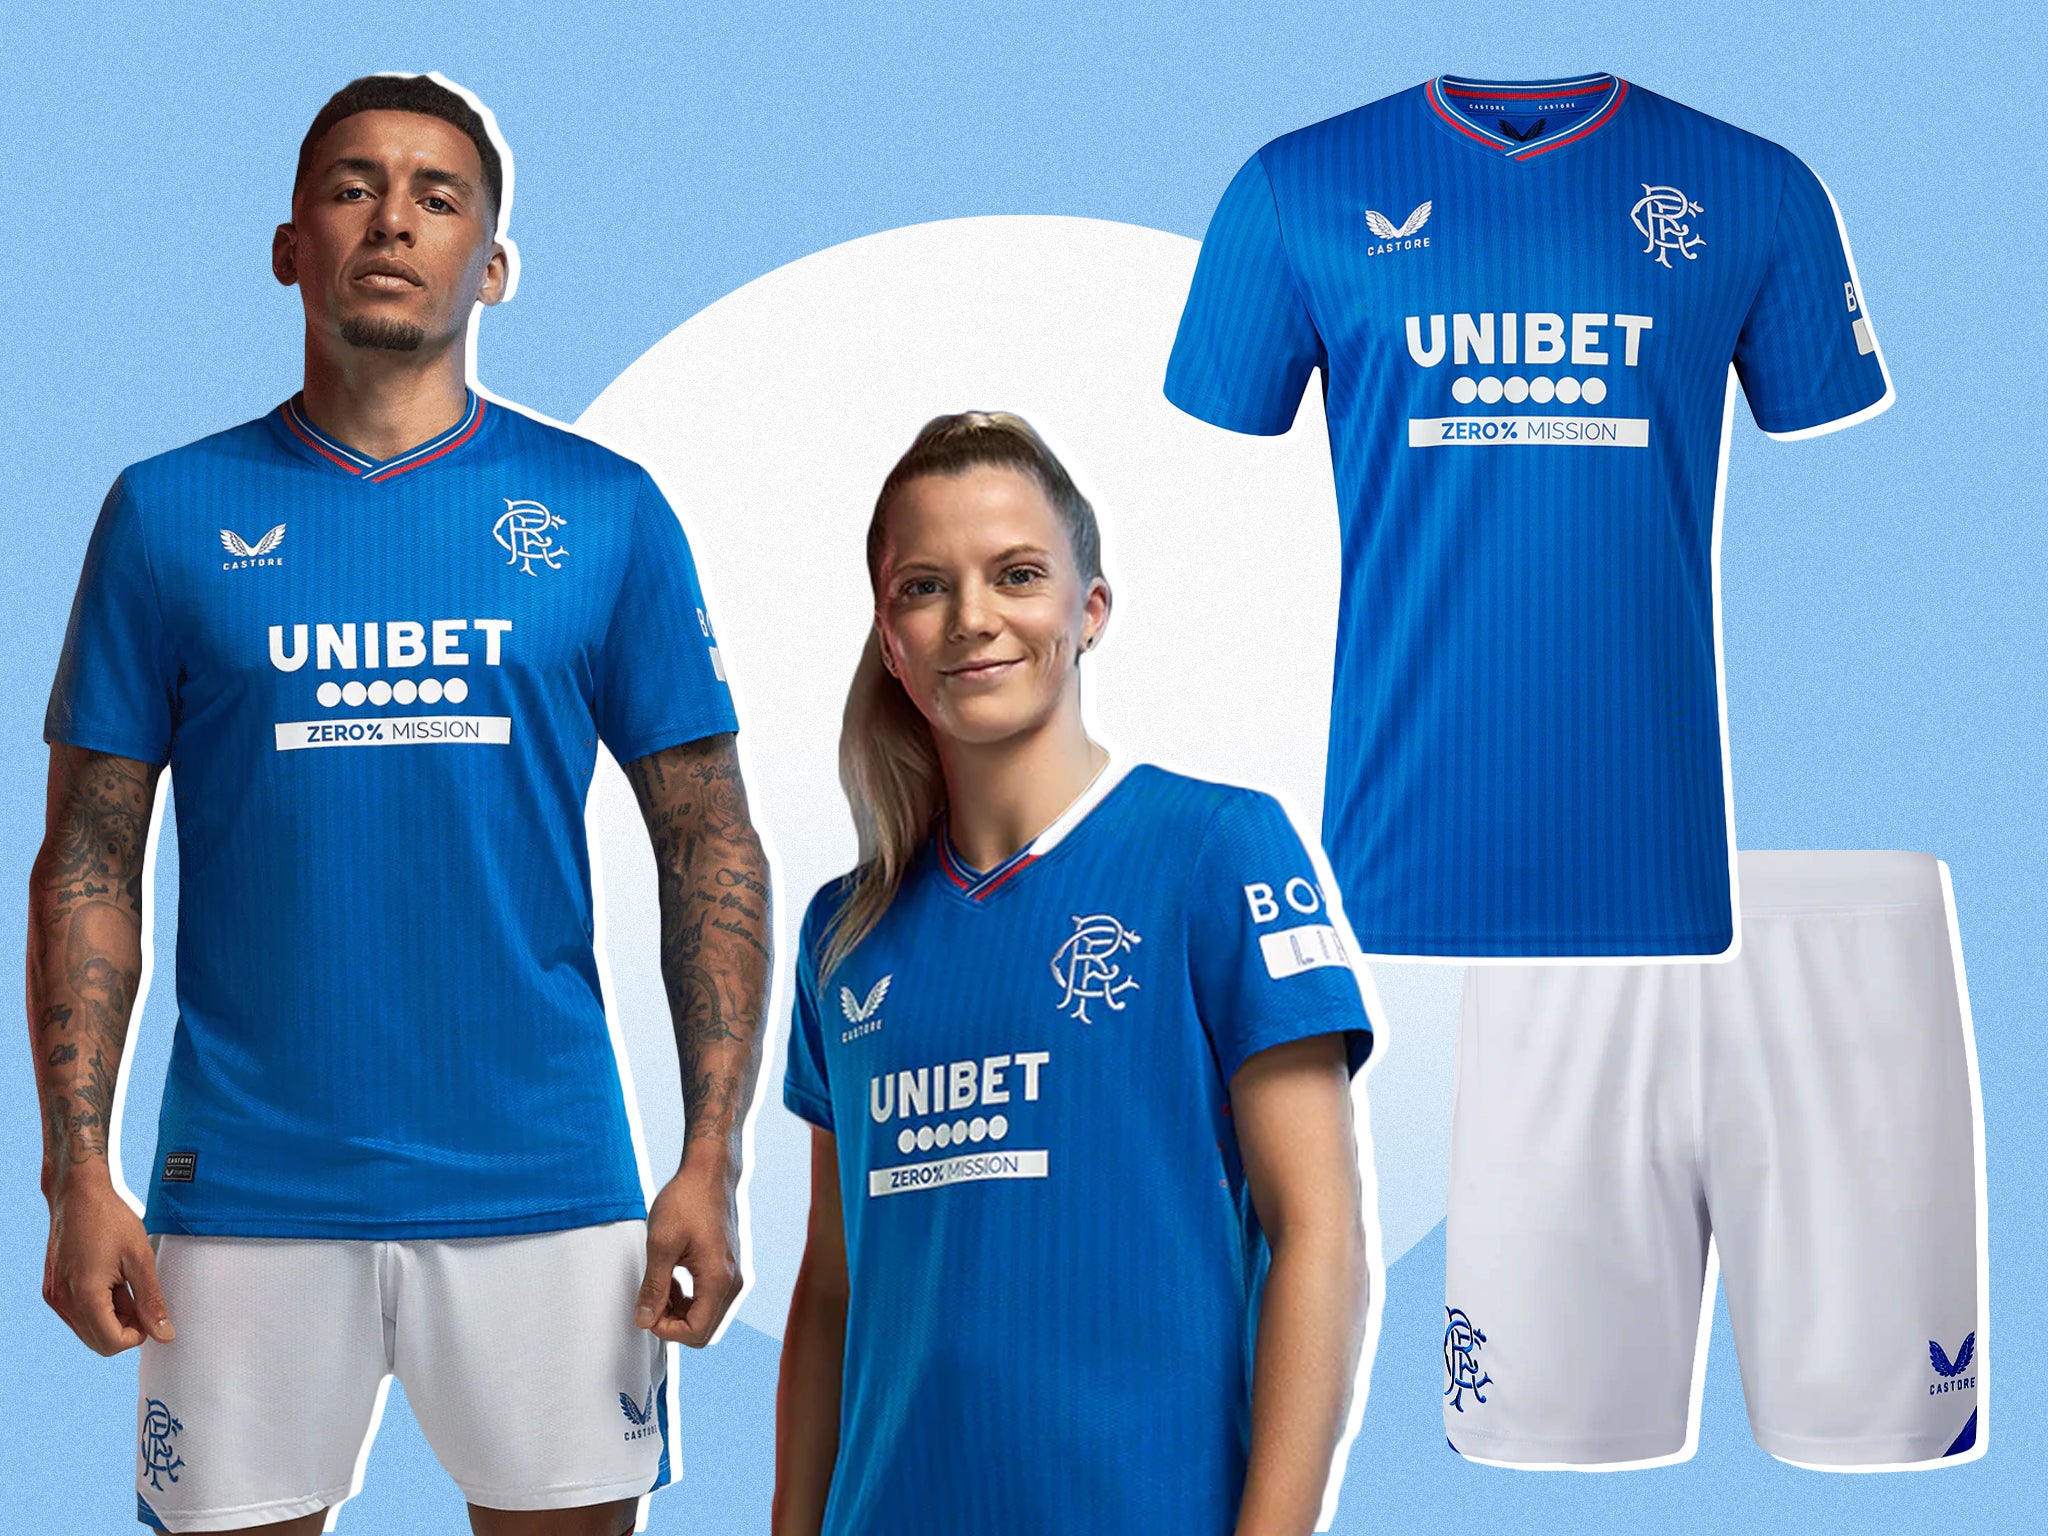 Cheap Rangers Football Shirts / Soccer Jerseys